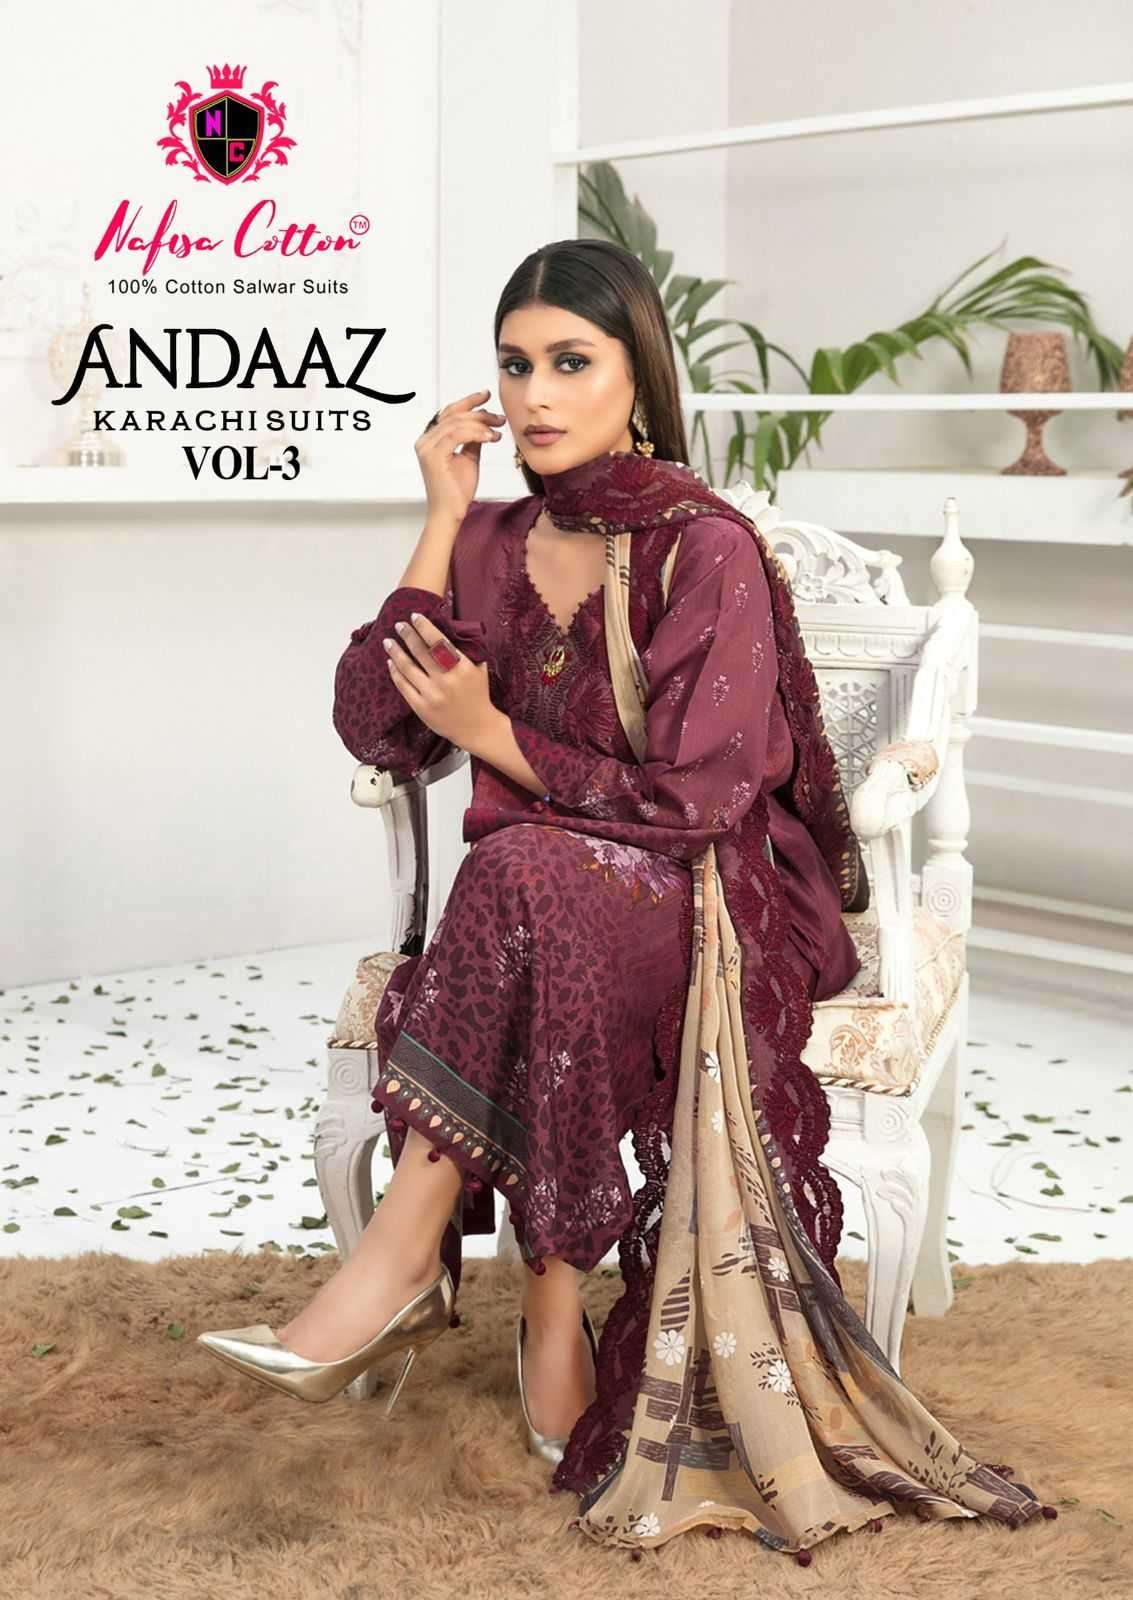 nafisa cotton andaaz karachi suits vol 3 series 3001-3006 Pure Soft Cotton suit